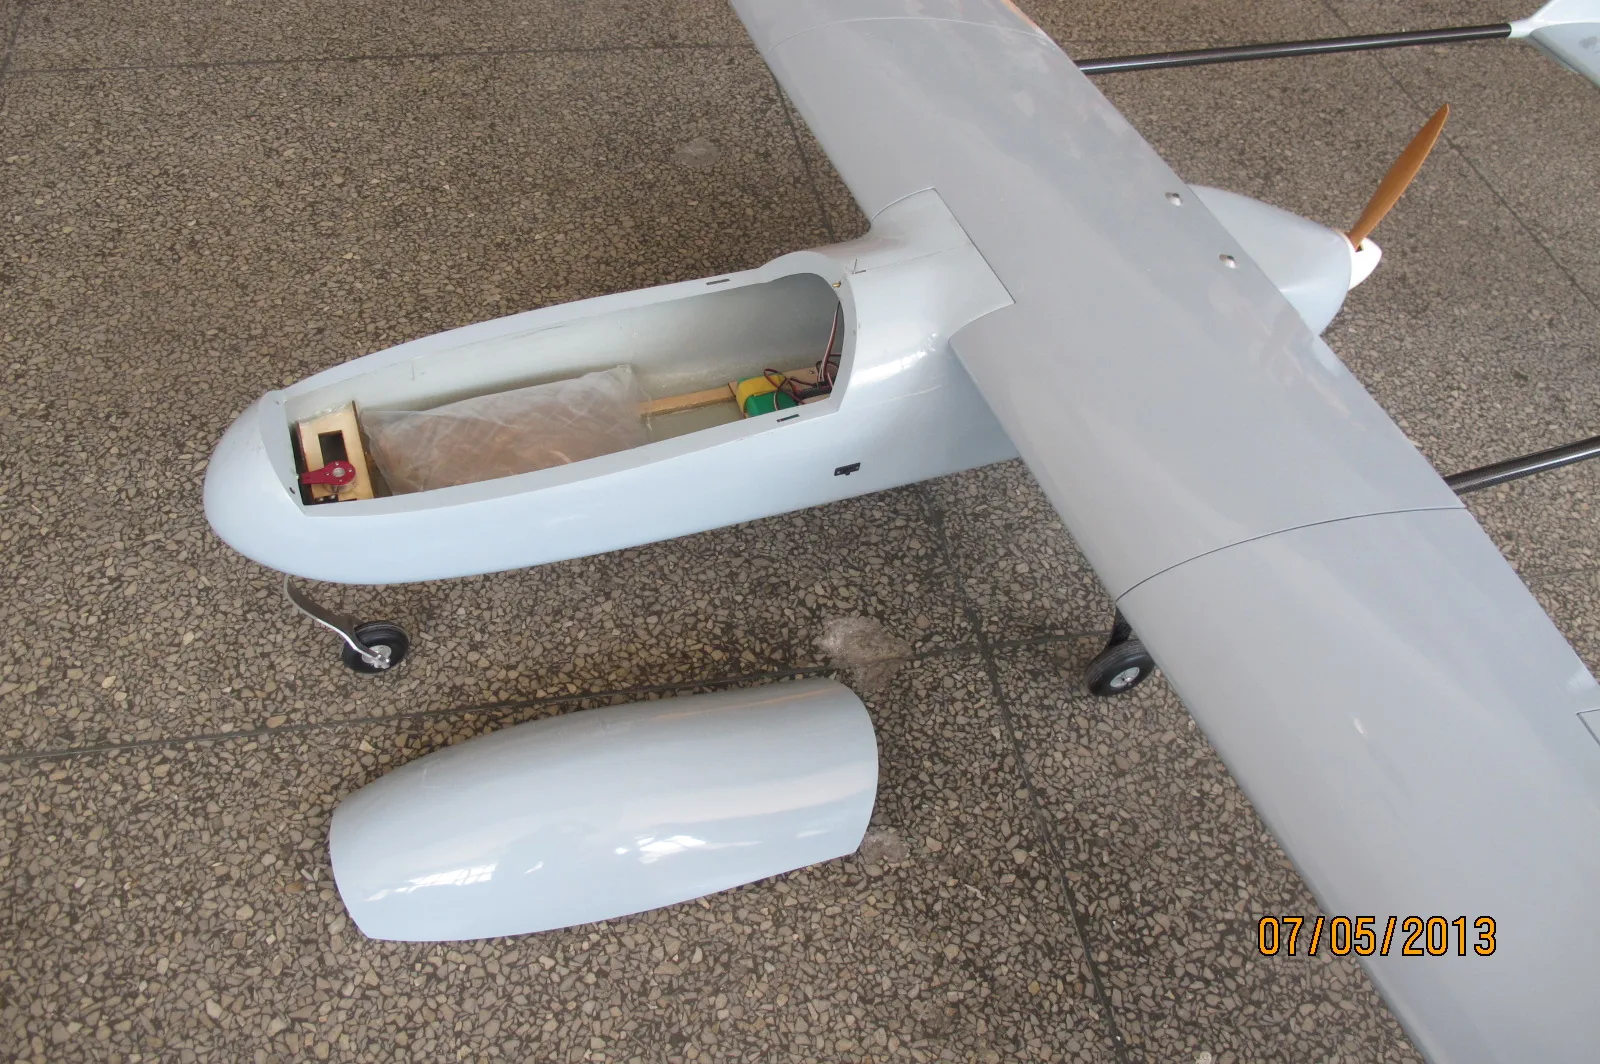 Мини Skyeye 2,6 м БПЛА Т хвост платформа углеродного волокна хвост костюм требование 30-35cc двигатель RC самолет комплект самолет